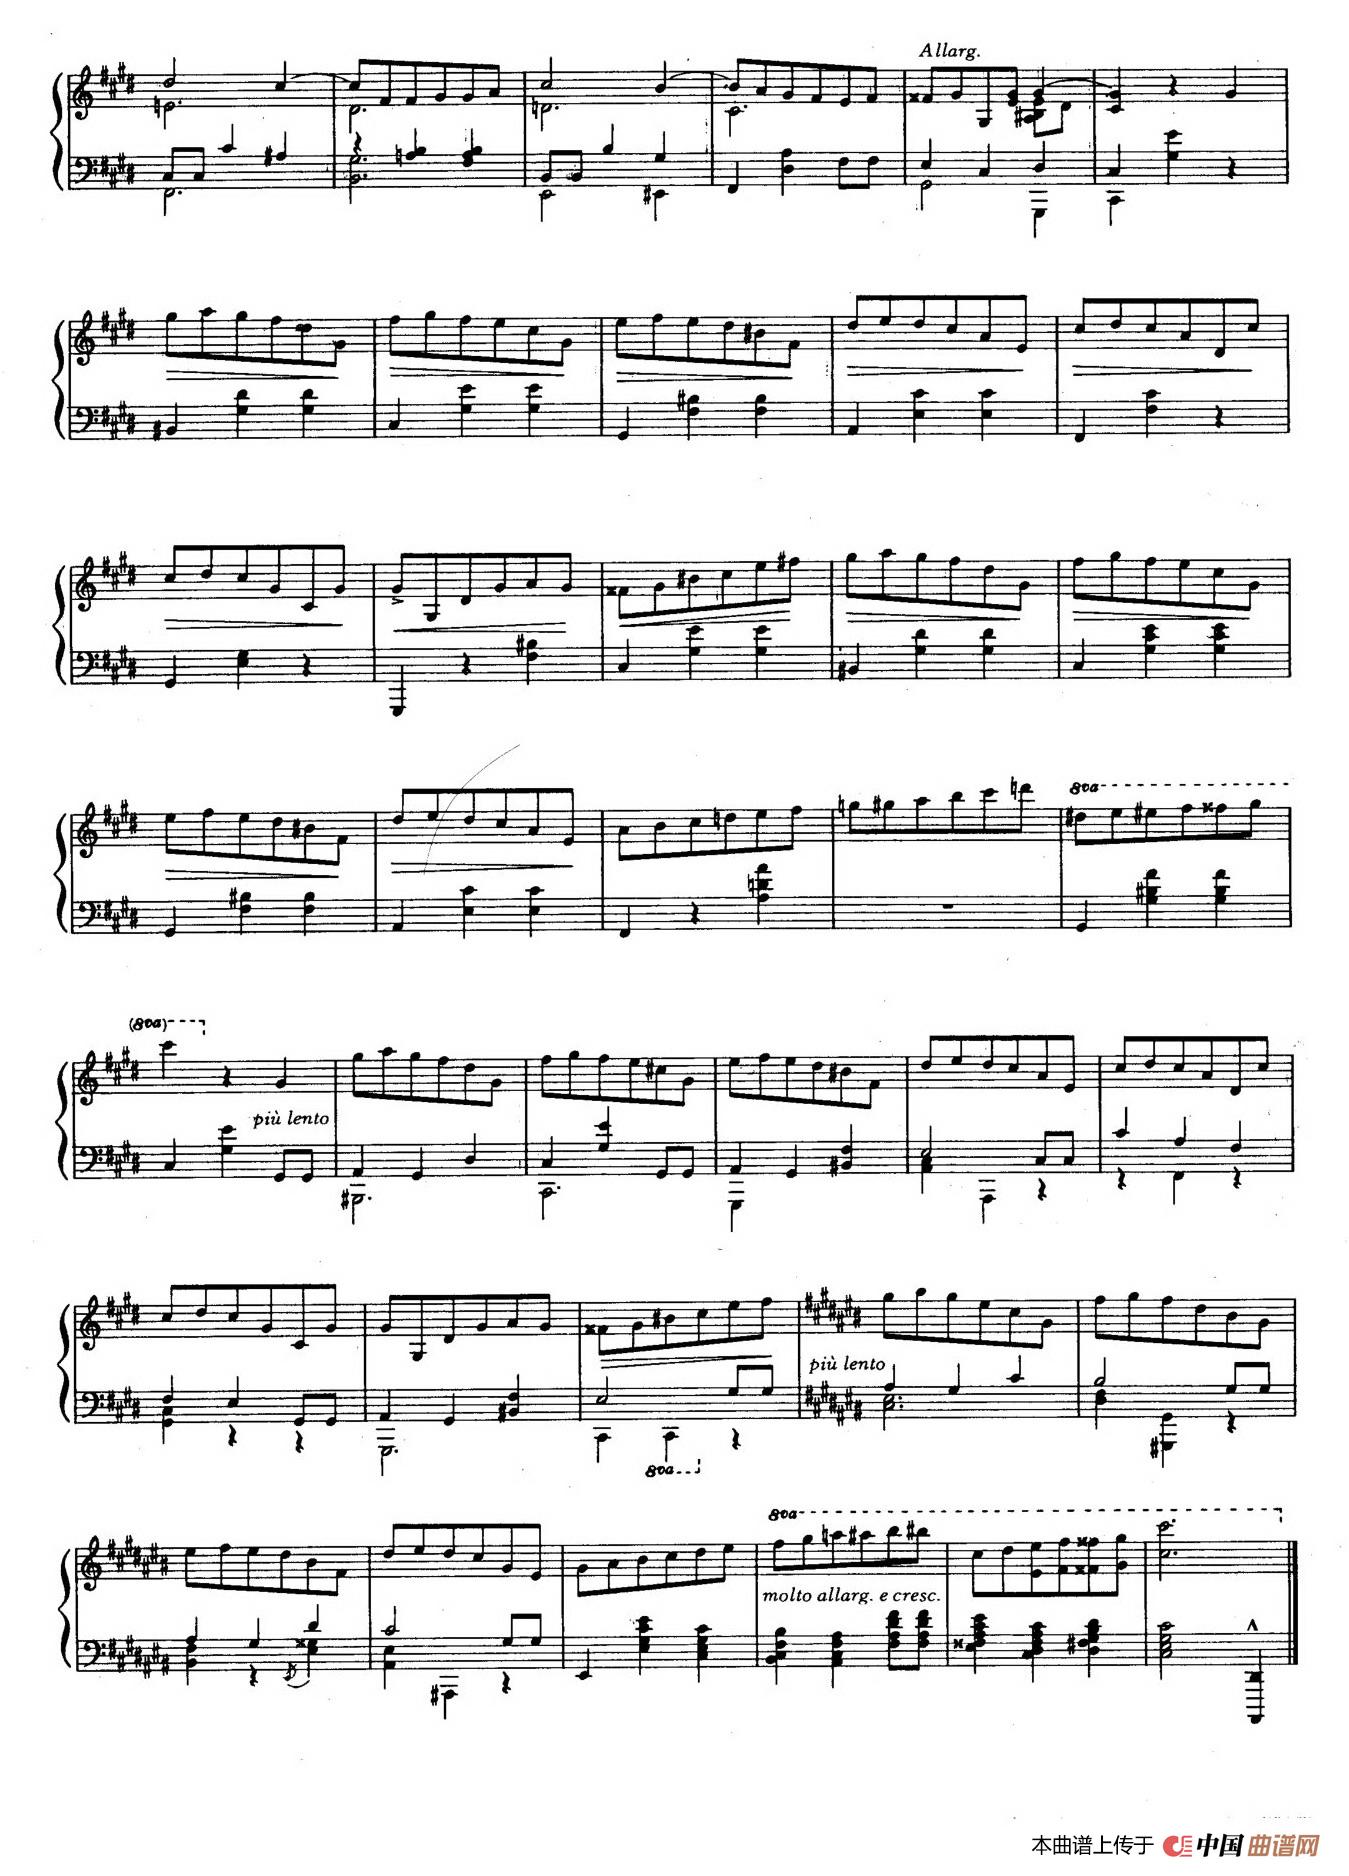 《Variations on 》钢琴曲谱图分享